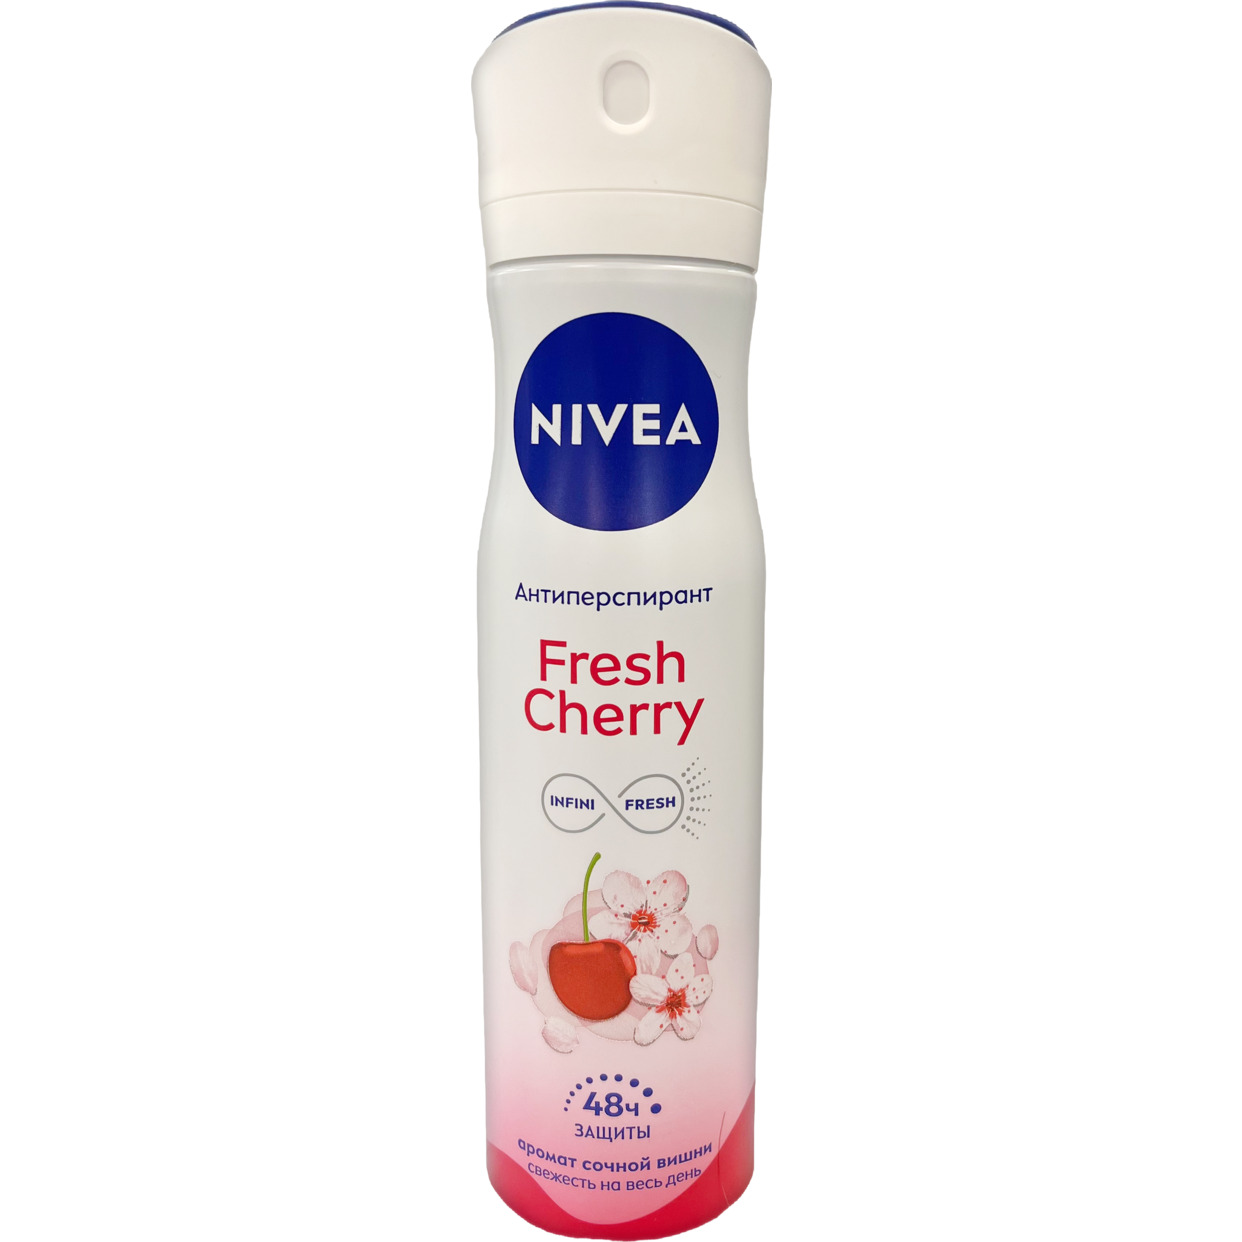 Антиперспирант «Fresh Cherry» марки «Nivea», 150мл по акции в Пятерочке